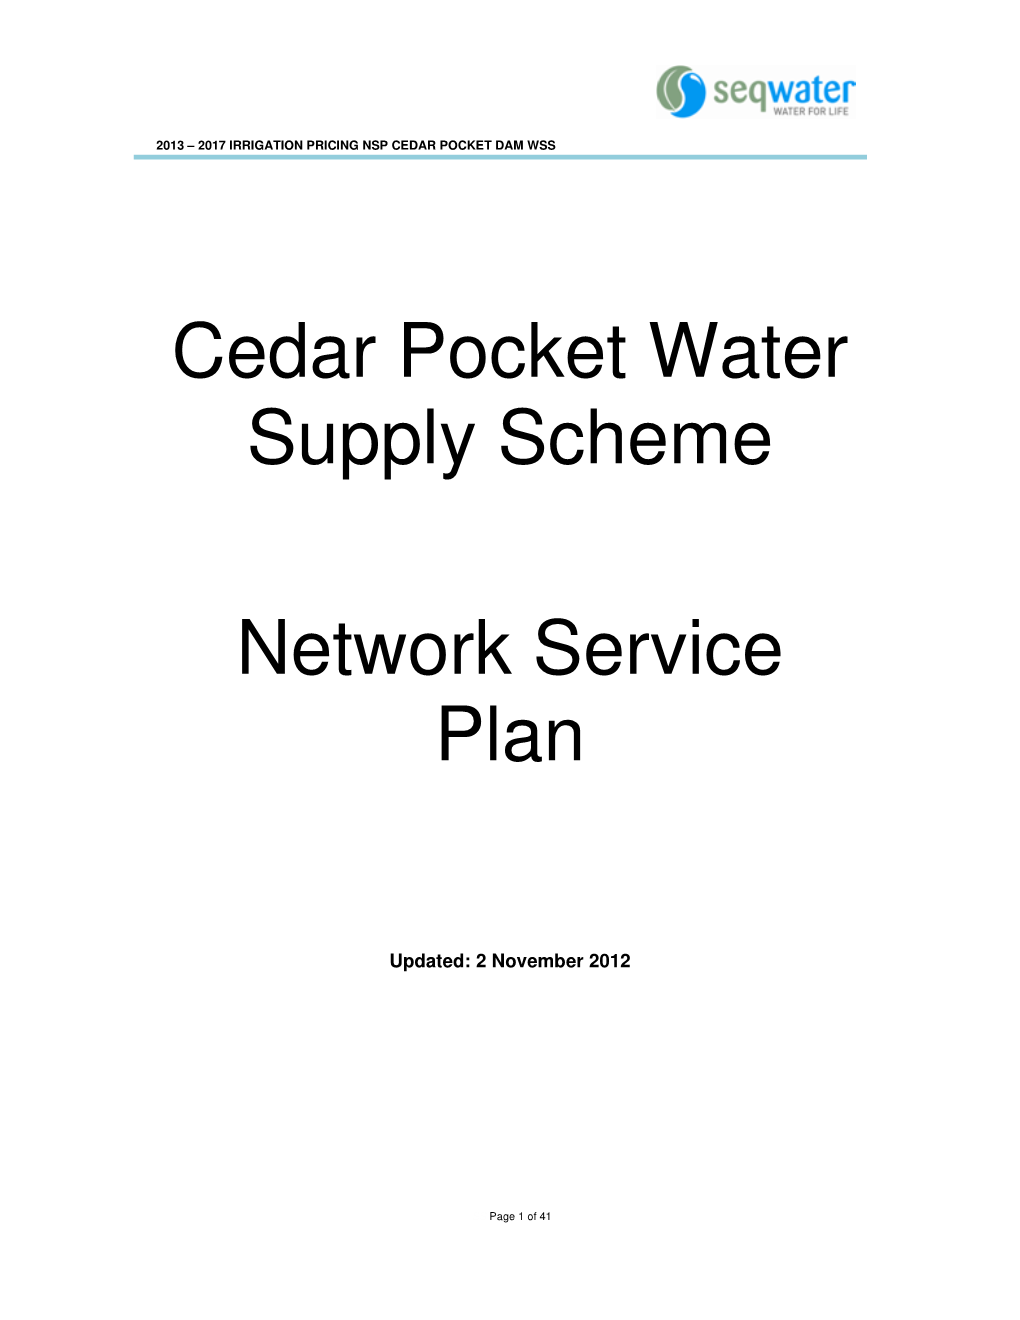 Cedar Pocket Water Supply Scheme Network Service Plan